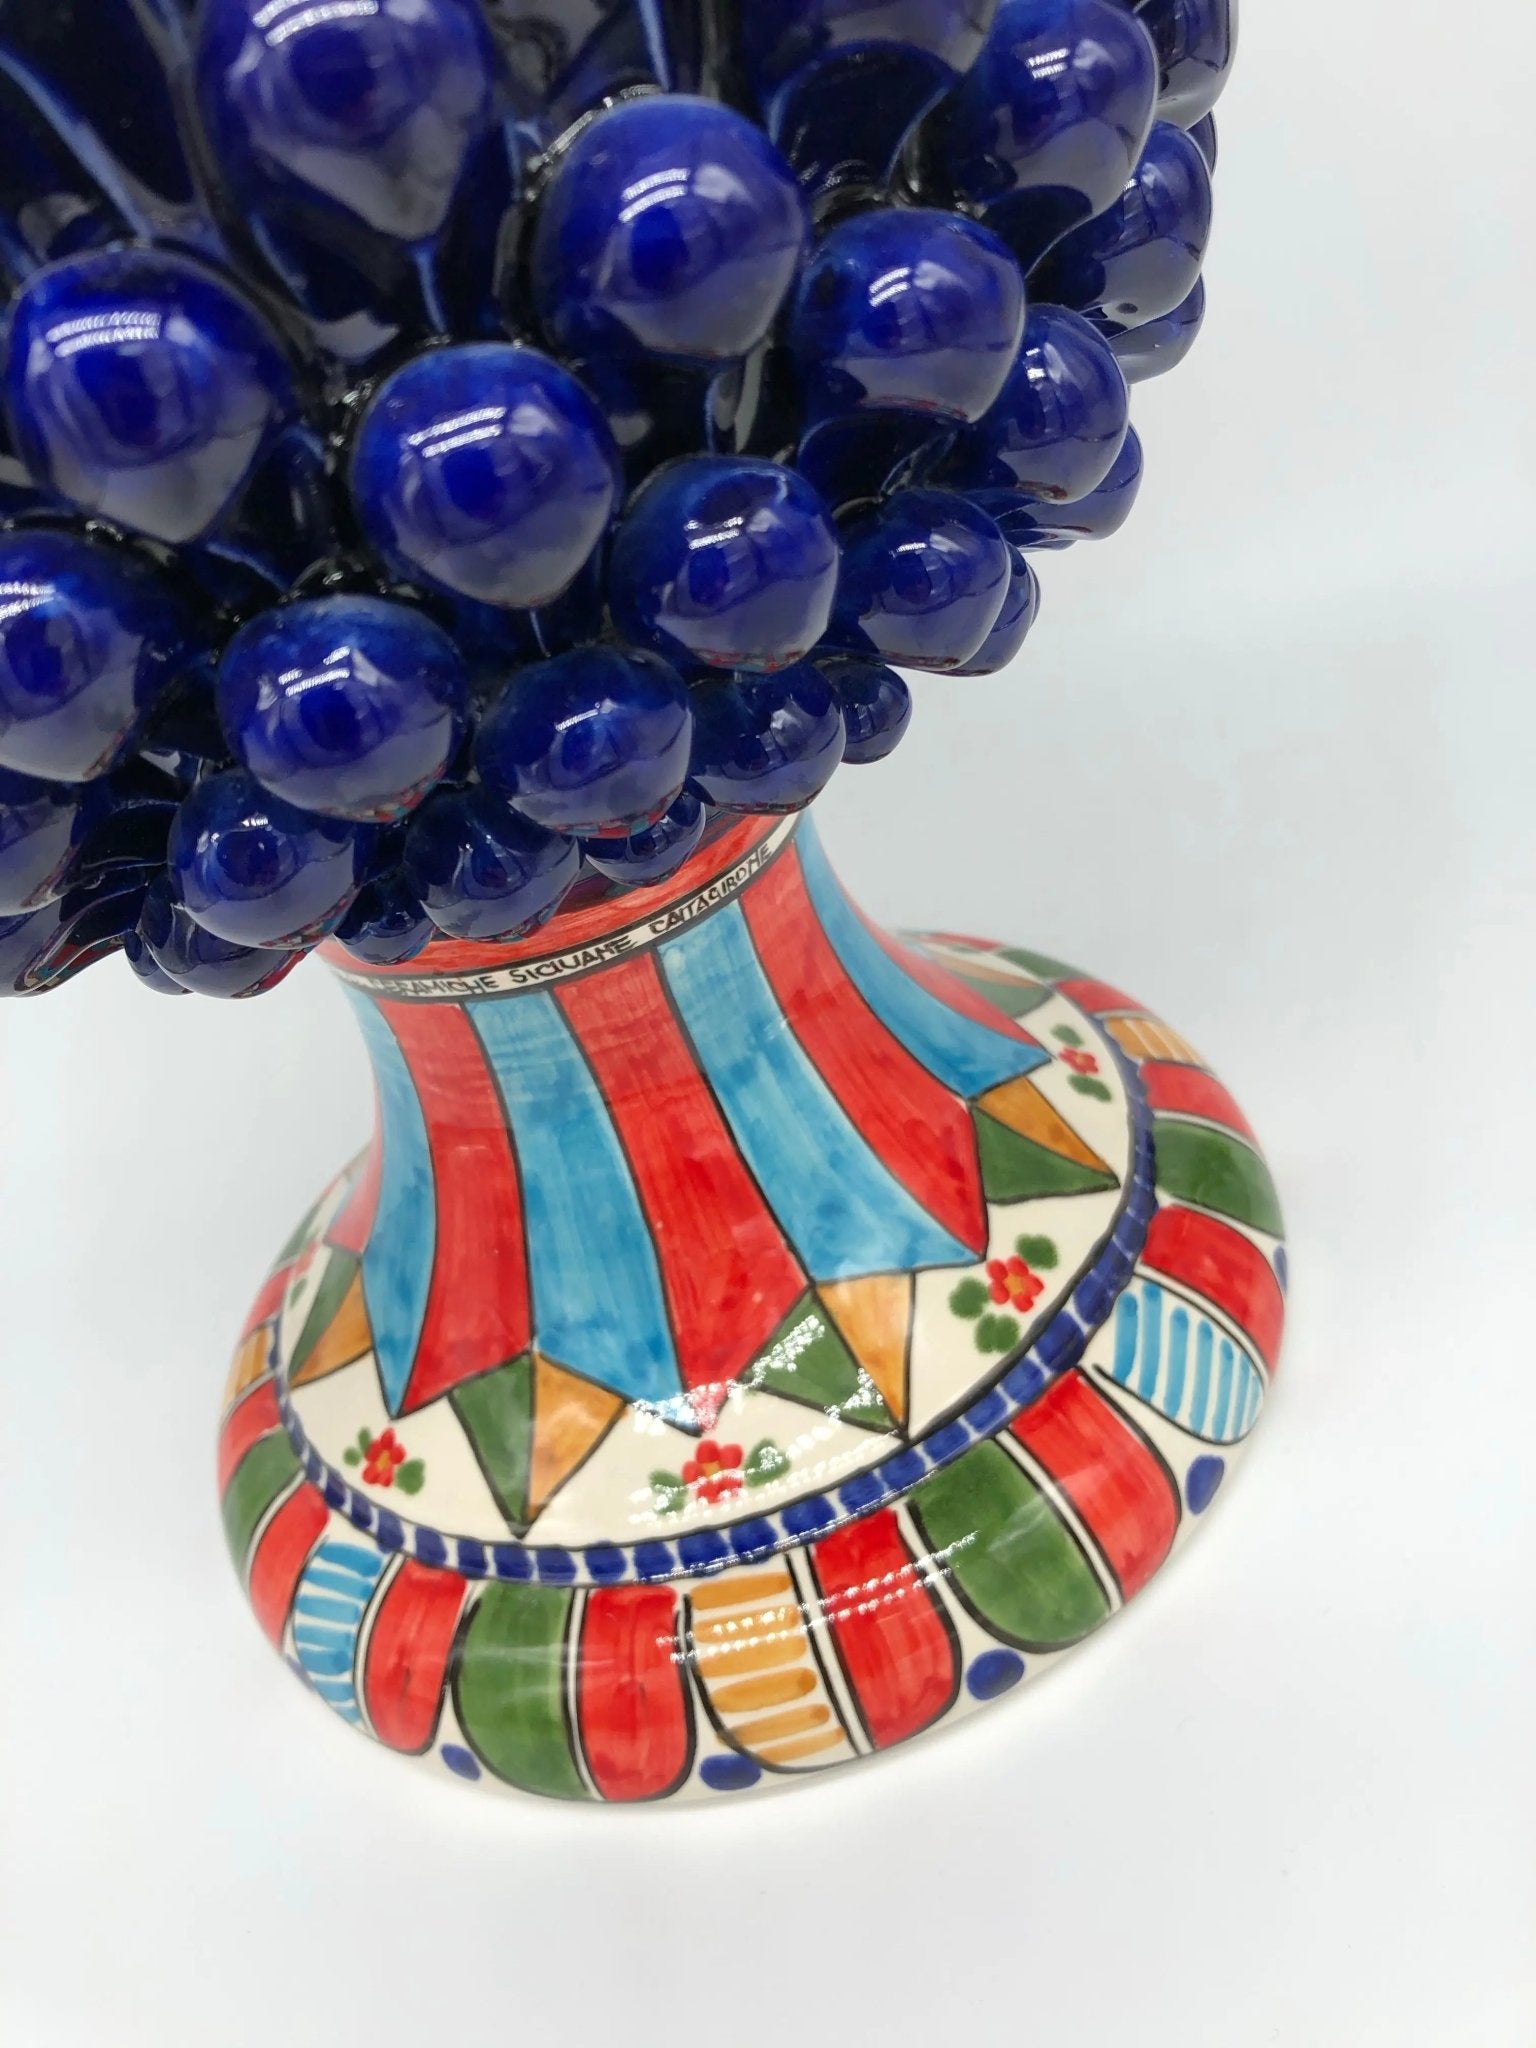 Pigna Ceramica Caltagirone cm H.40 Artigianale Blu Base Decorata 2021 - DD CERAMICHE SICILIANE